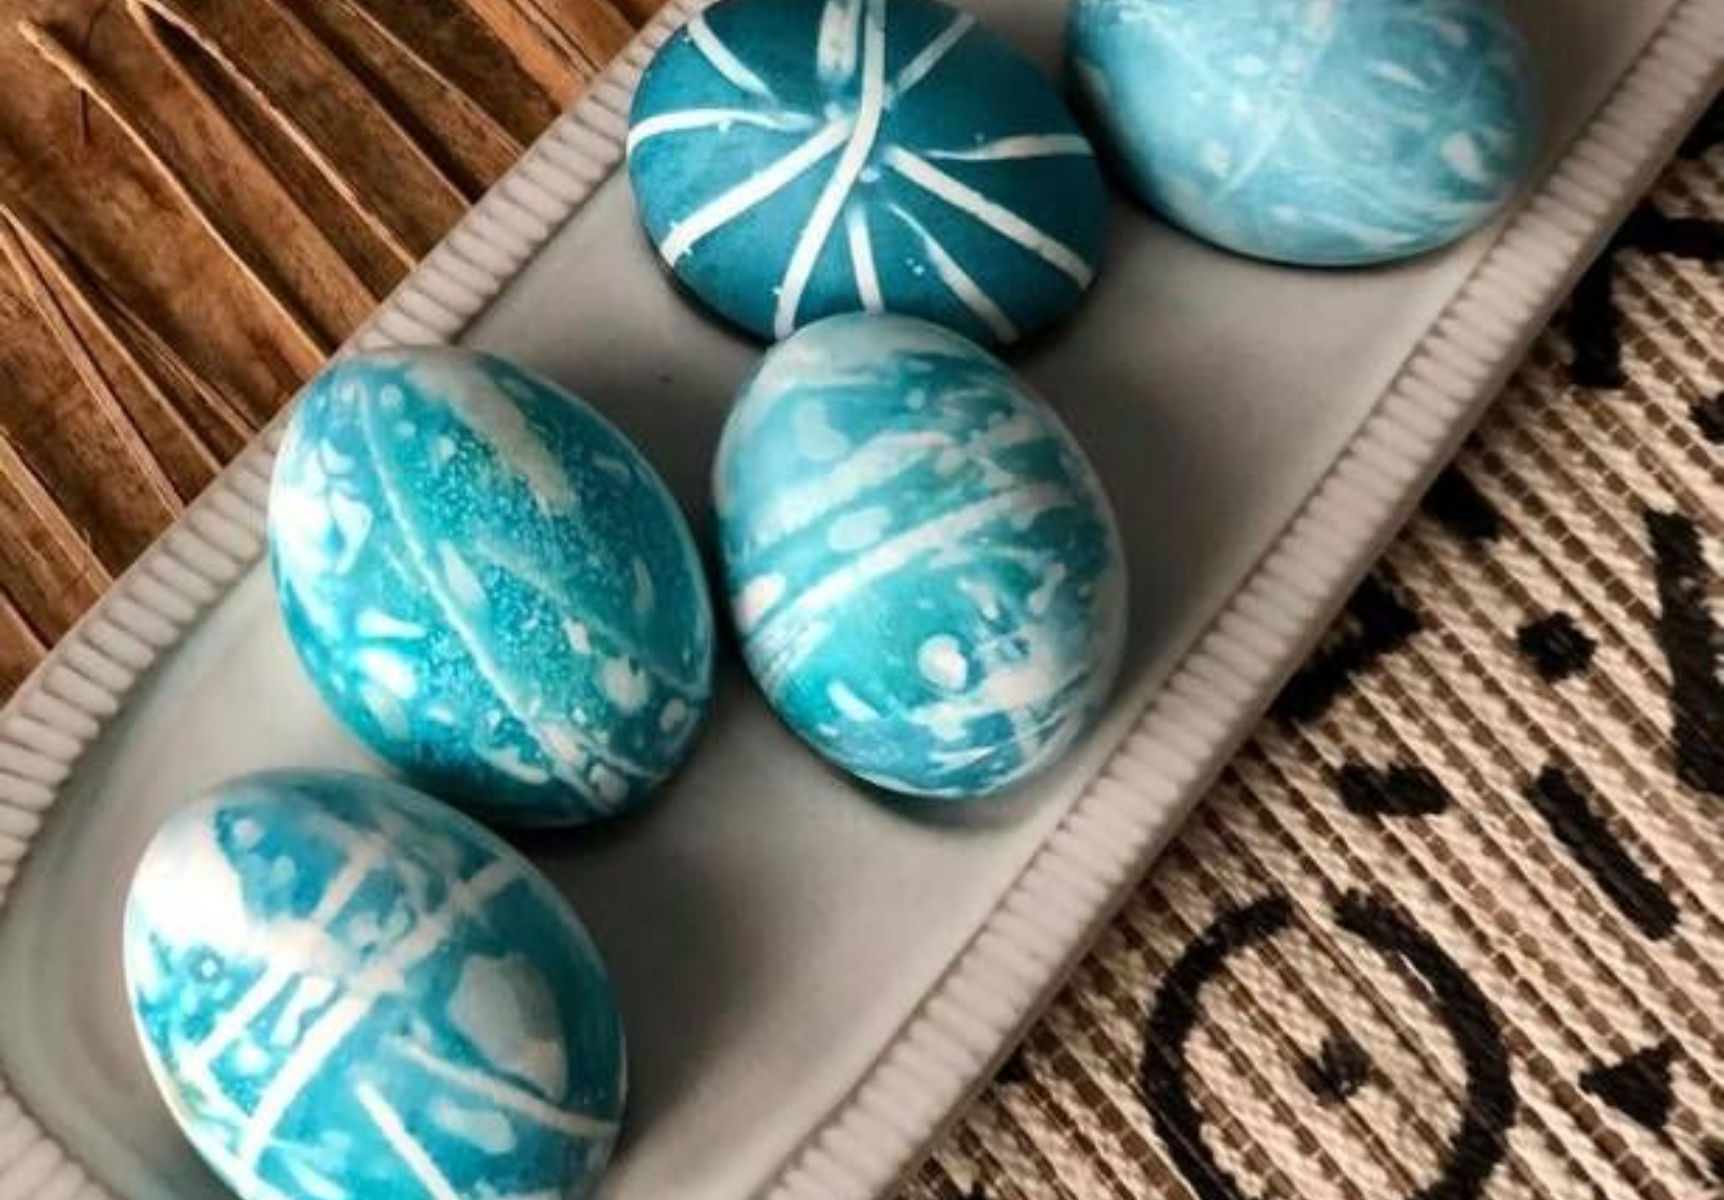 Πάσχα: Πως να βάψετε τα αυγά με την αρχαία ιαπωνική τεχνική Shibori – Οδηγίες βήμα βήμα